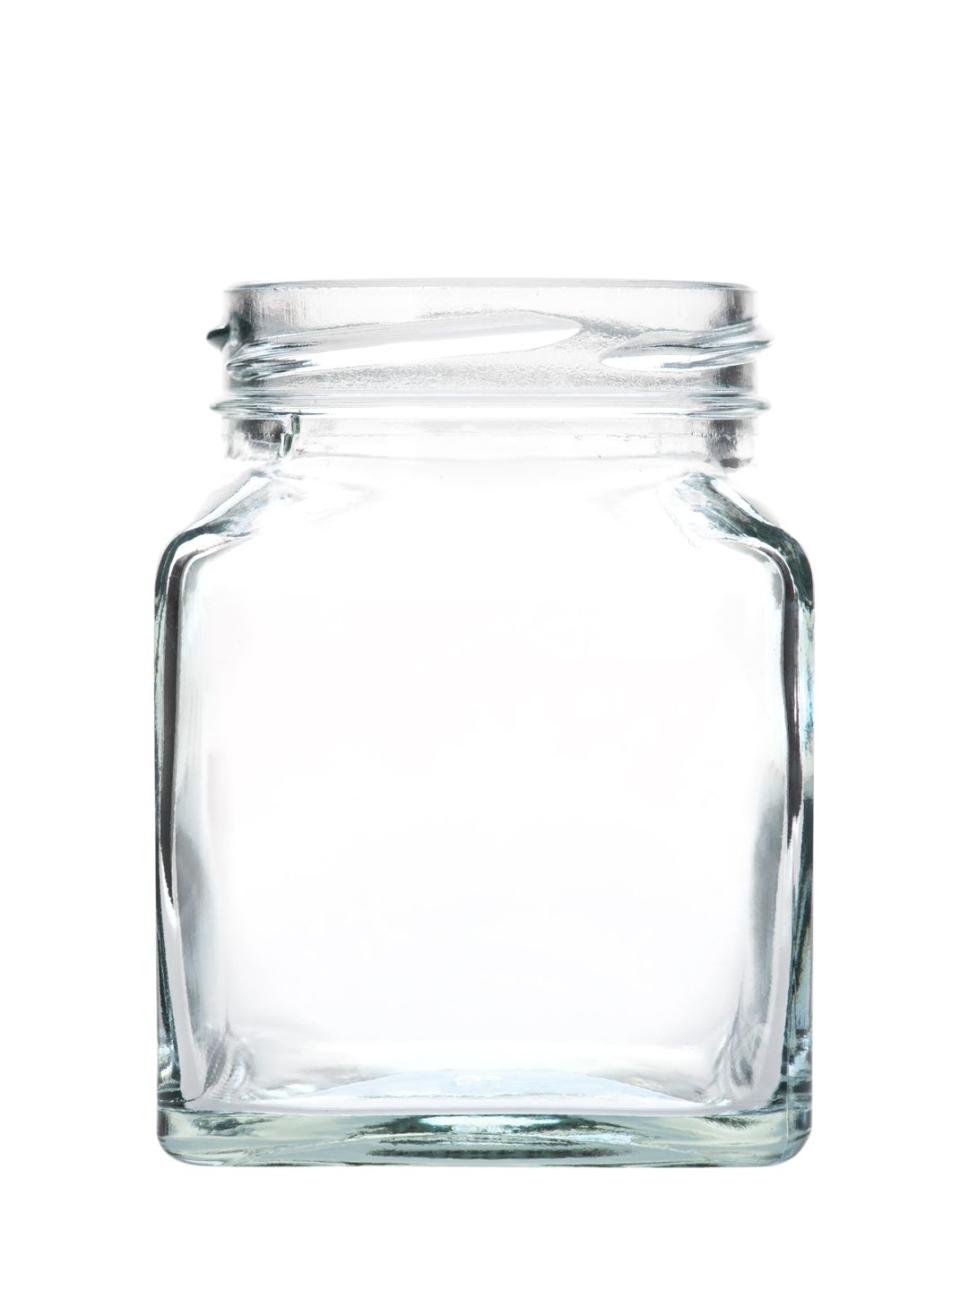 9) Make a memory jar